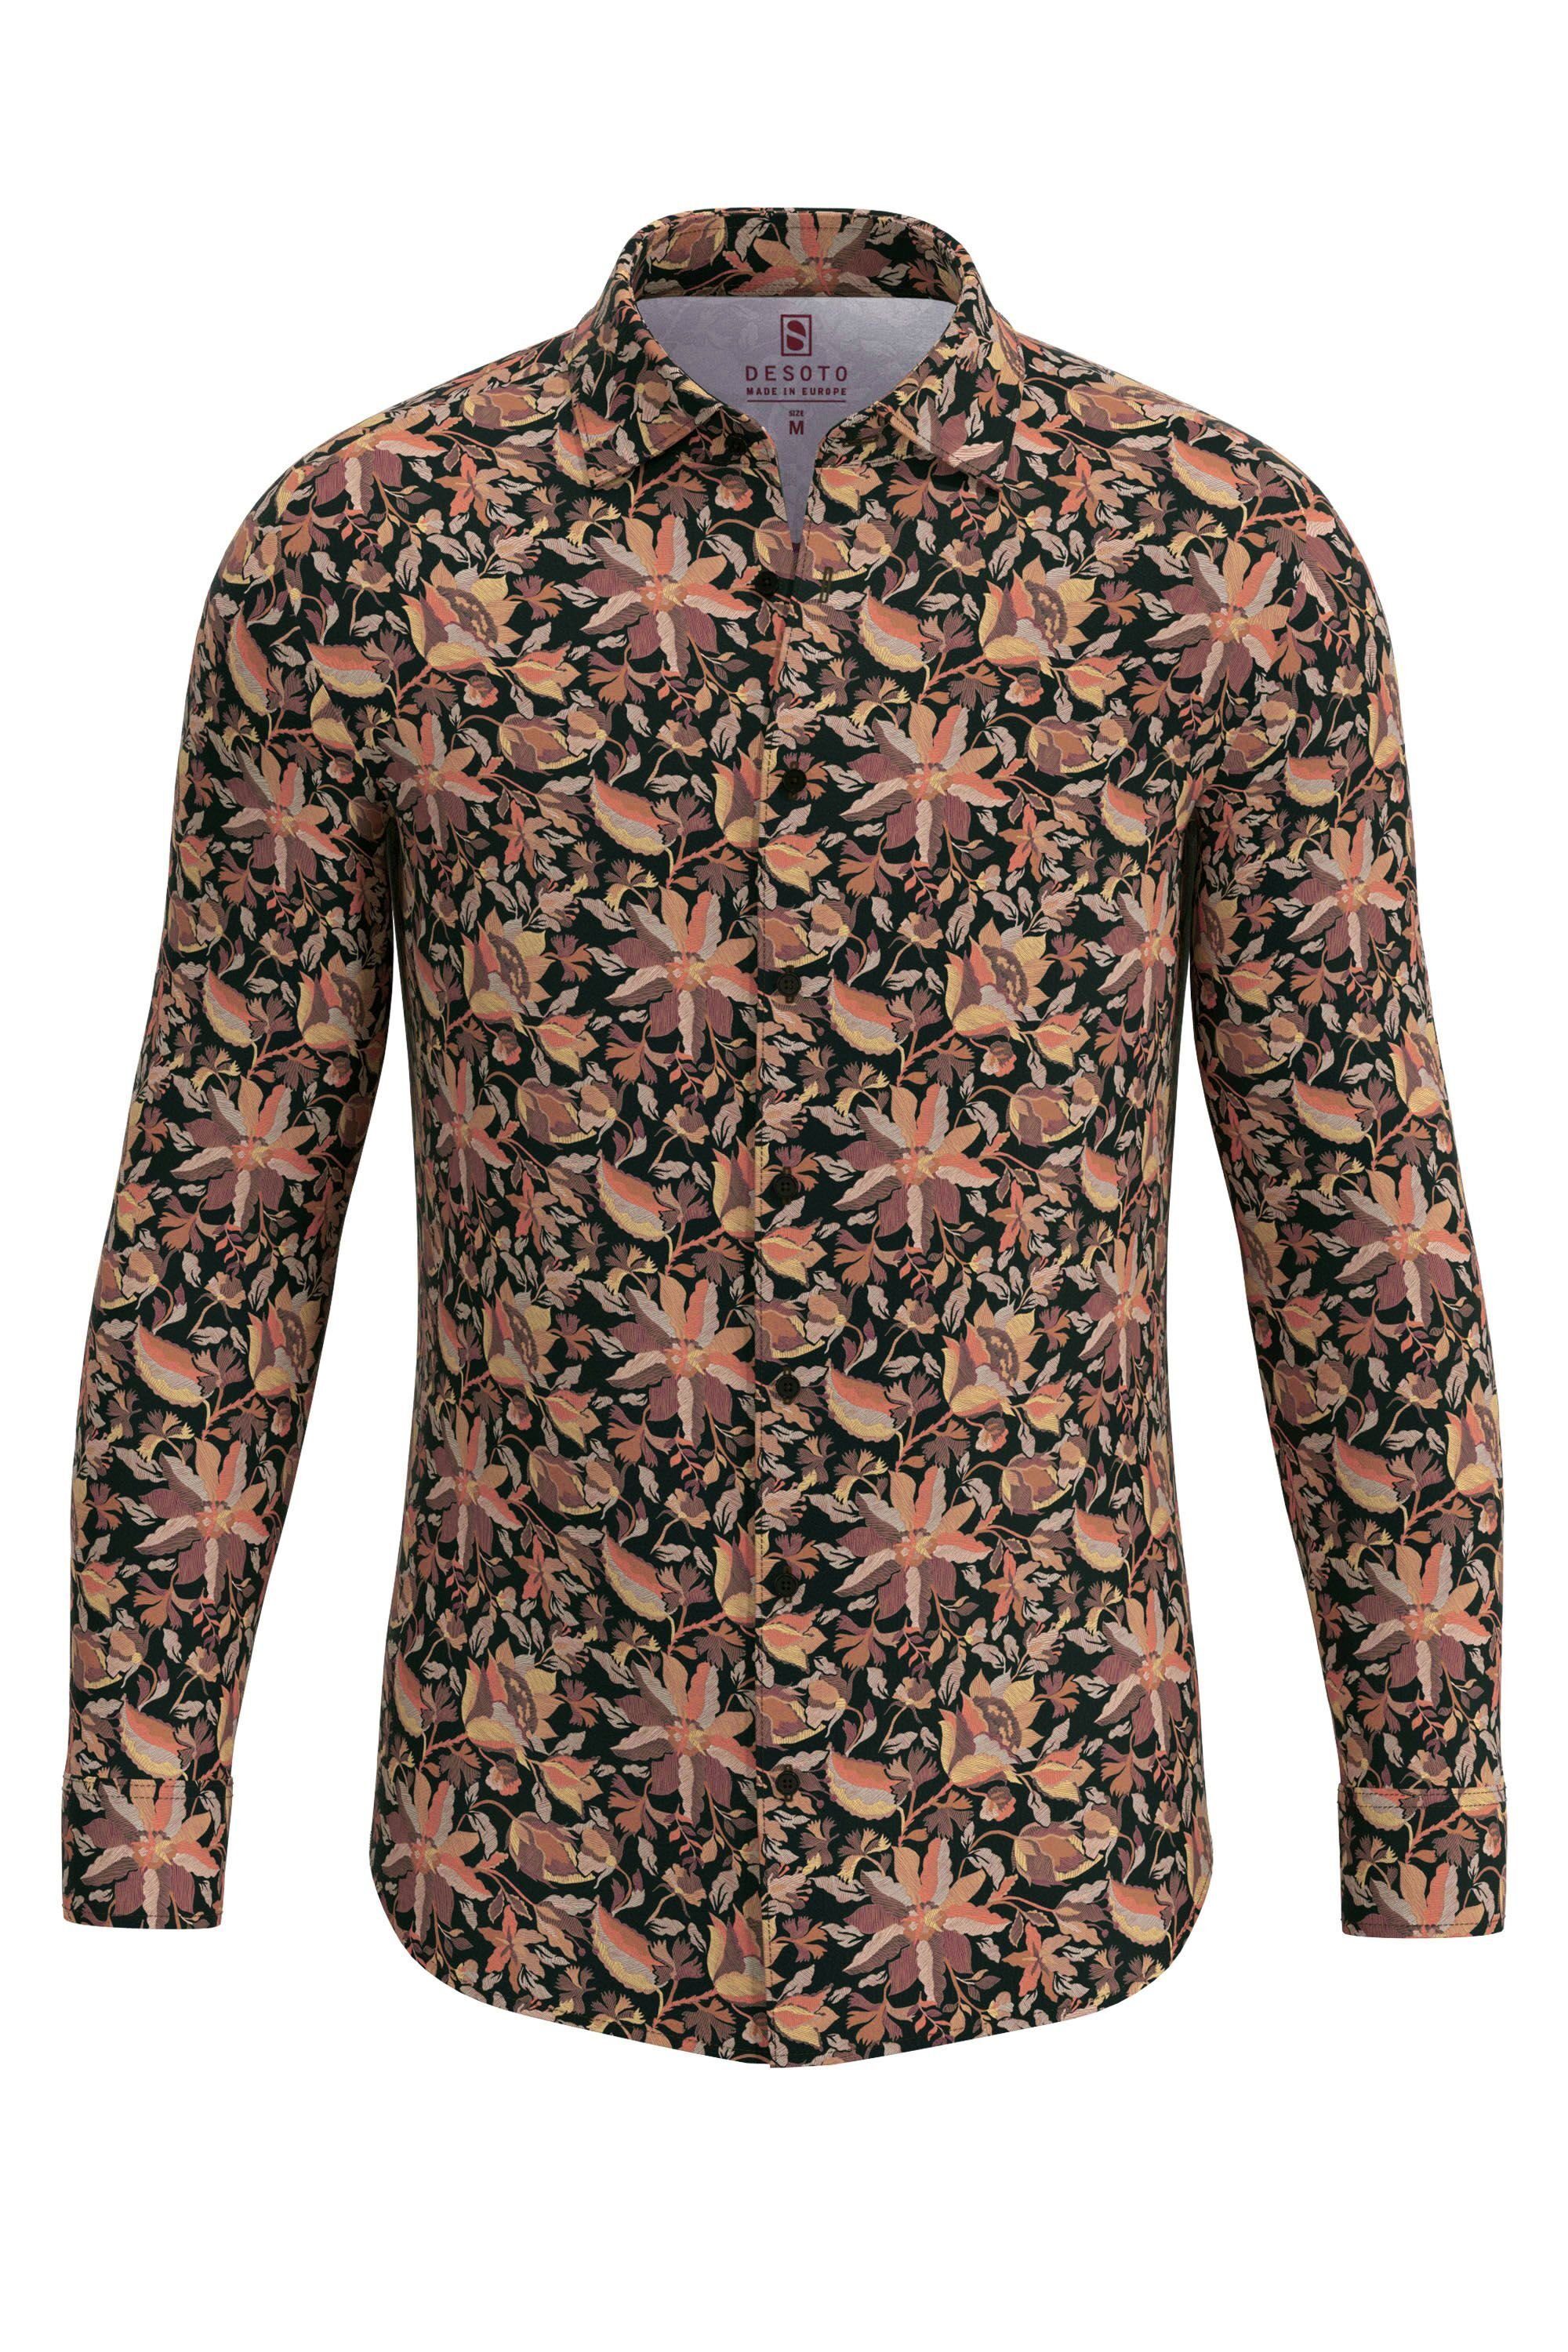 körpernah wooden flowers coloured Businesshemd geschnitten Desoto